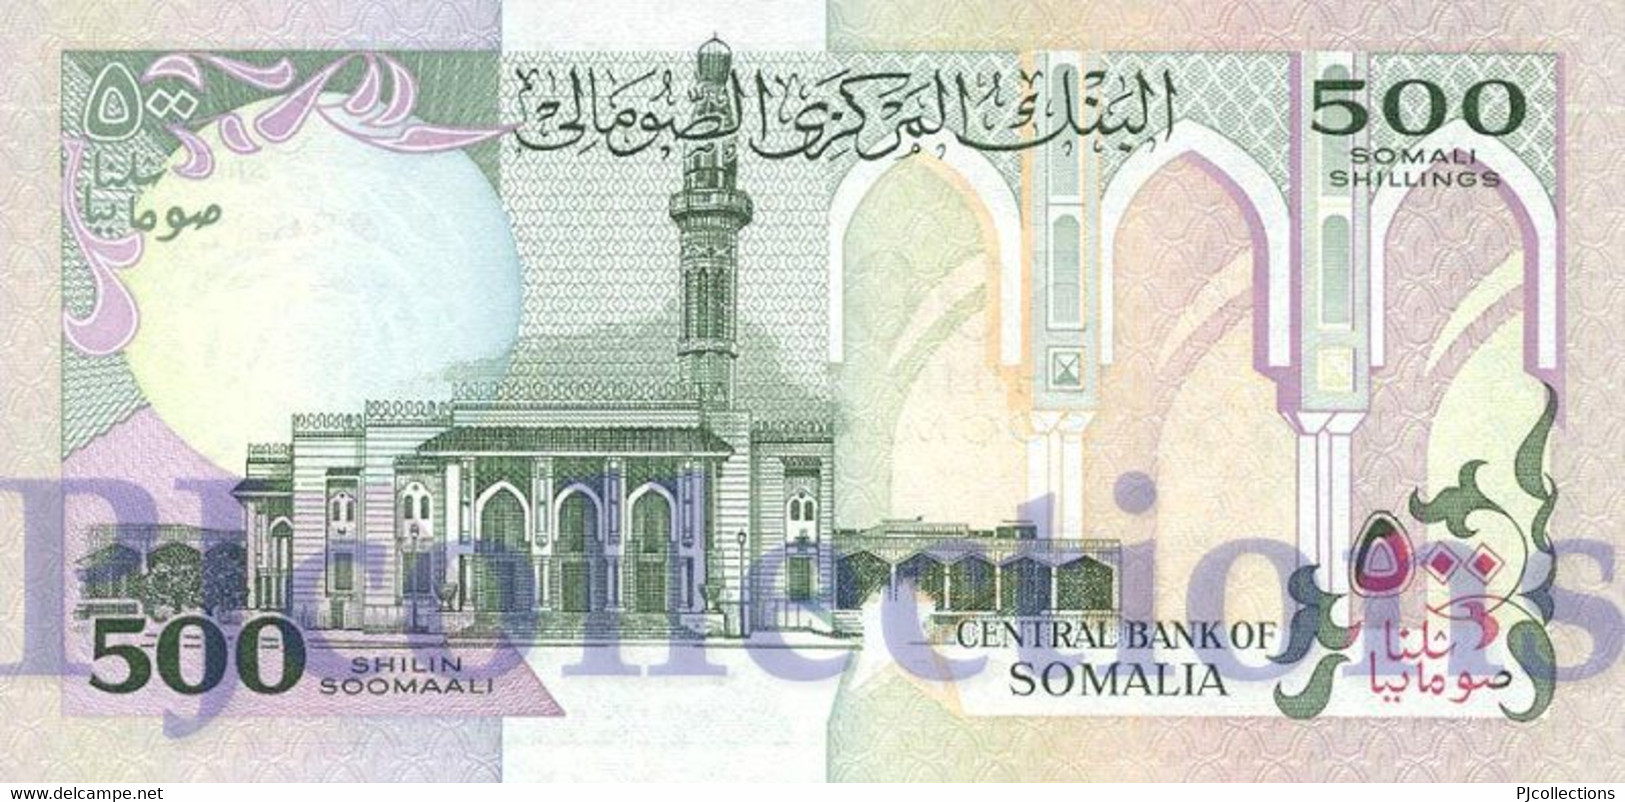 LOT SOMALIA 500 SHILLINGS 1996 PICK 36c UNC X 5 PCS - Somalie